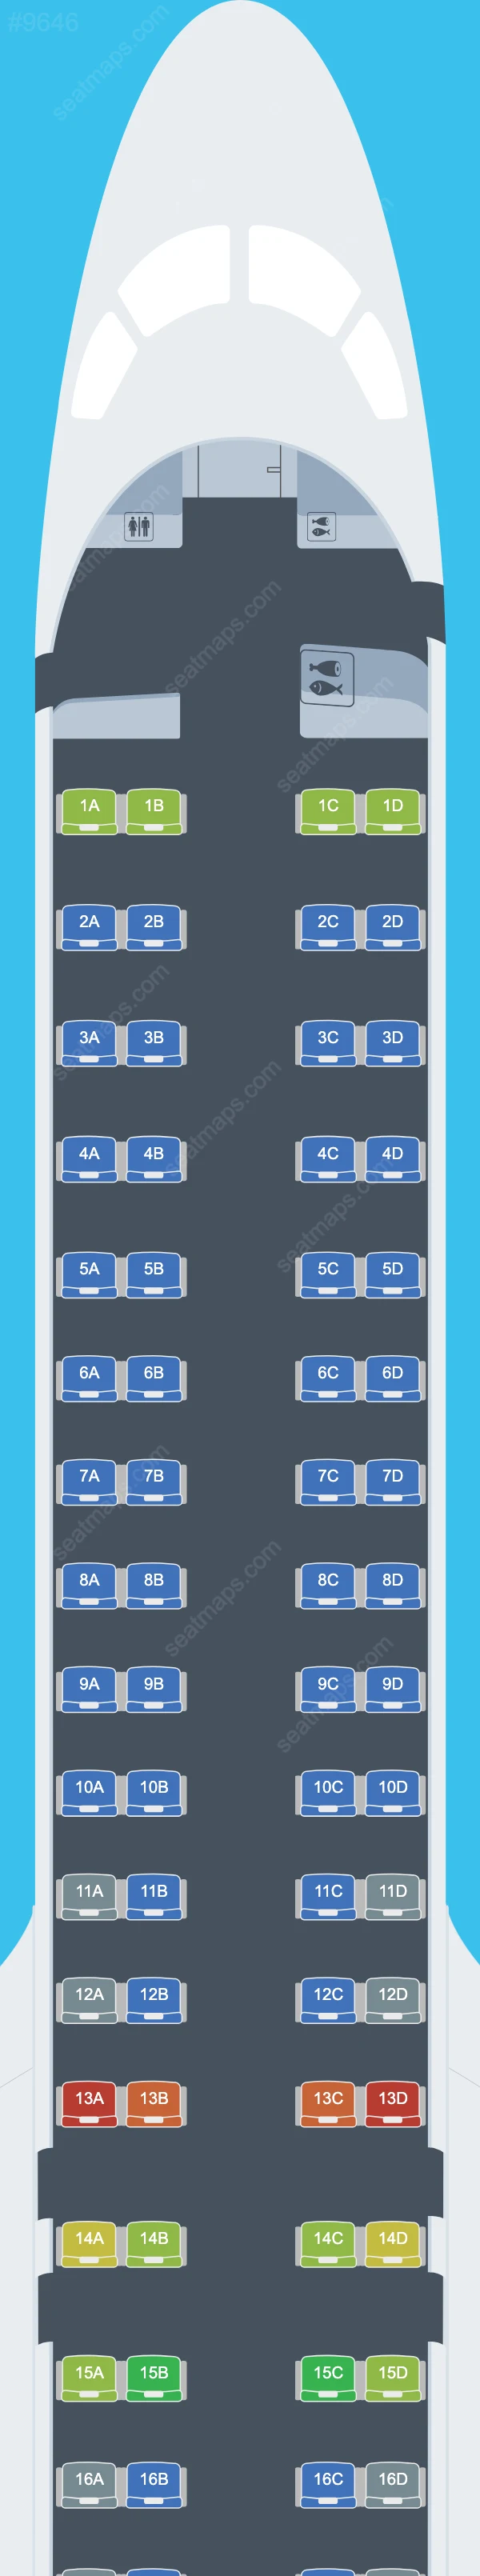 Azul Brazilian Airlines Embraer E195-E2 Seat Maps E195 E2